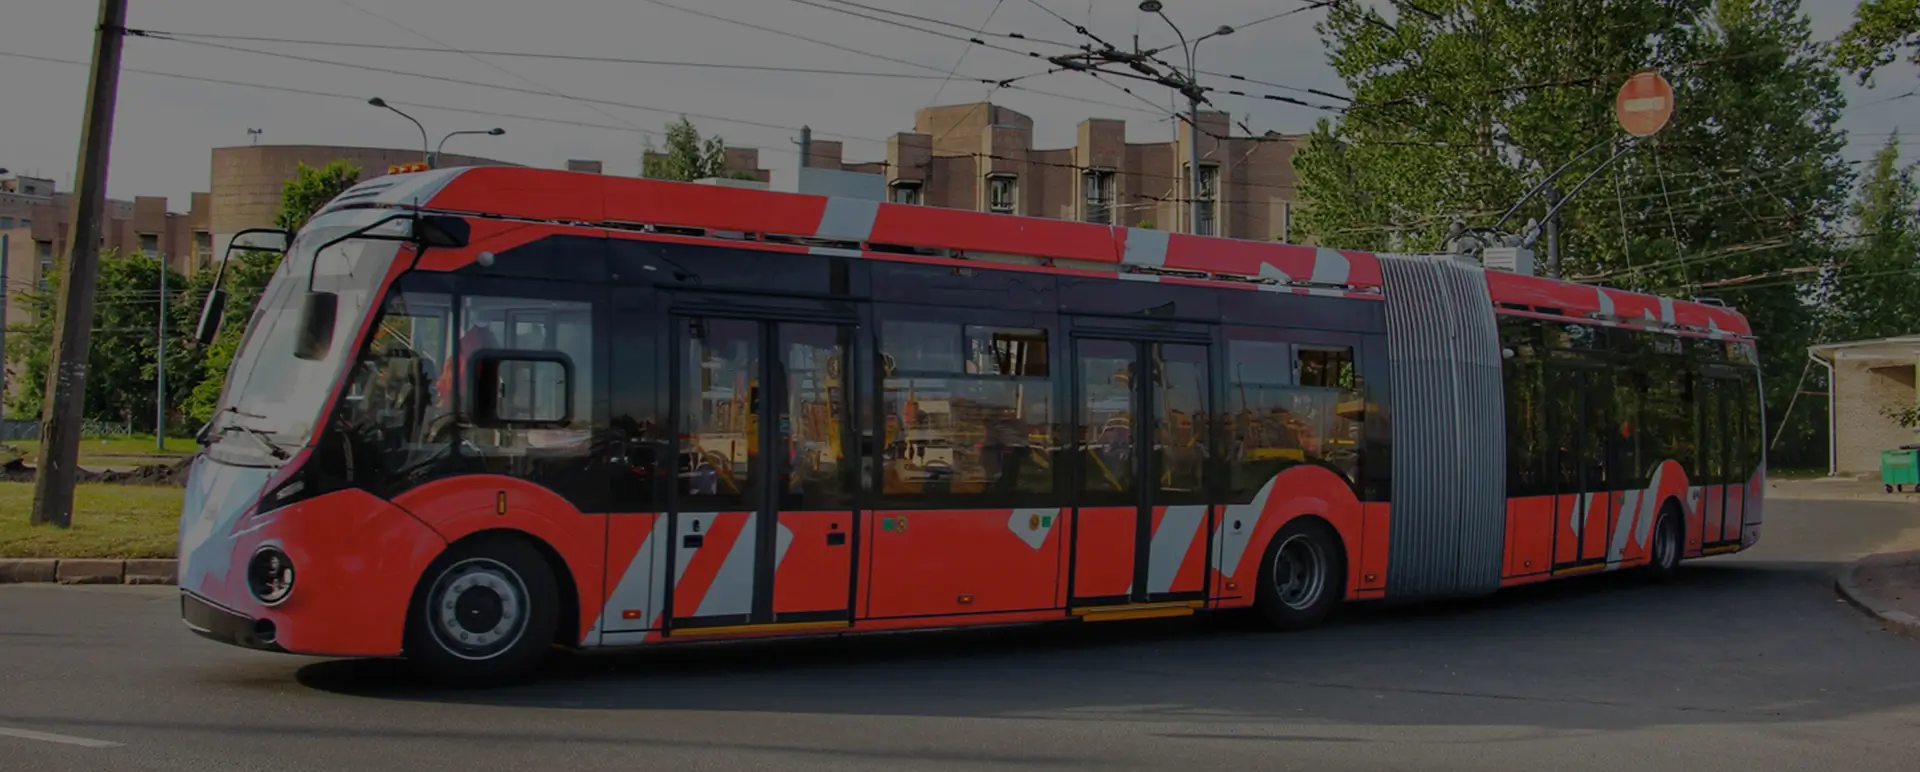 Перевозка троллейбусов. Транспортировка троллейбусов. Троллейбус nhjkf. Как перевозят троллейбус из города в город. Сколько стоит трале троллейбус.